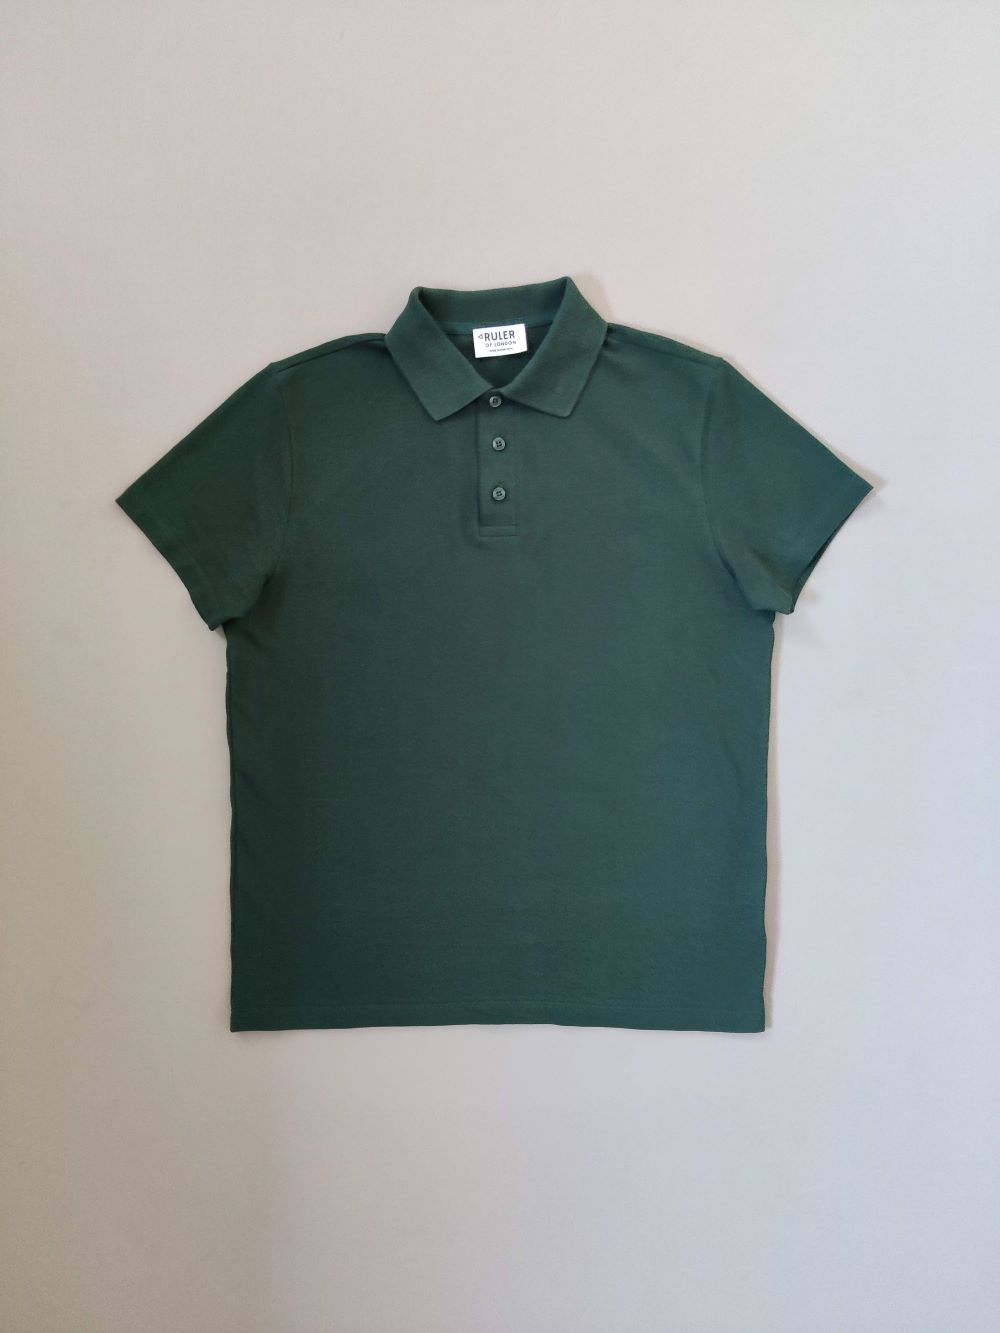 Starter Gift Bundle (Polo, T-shirt, Sweatshirt)